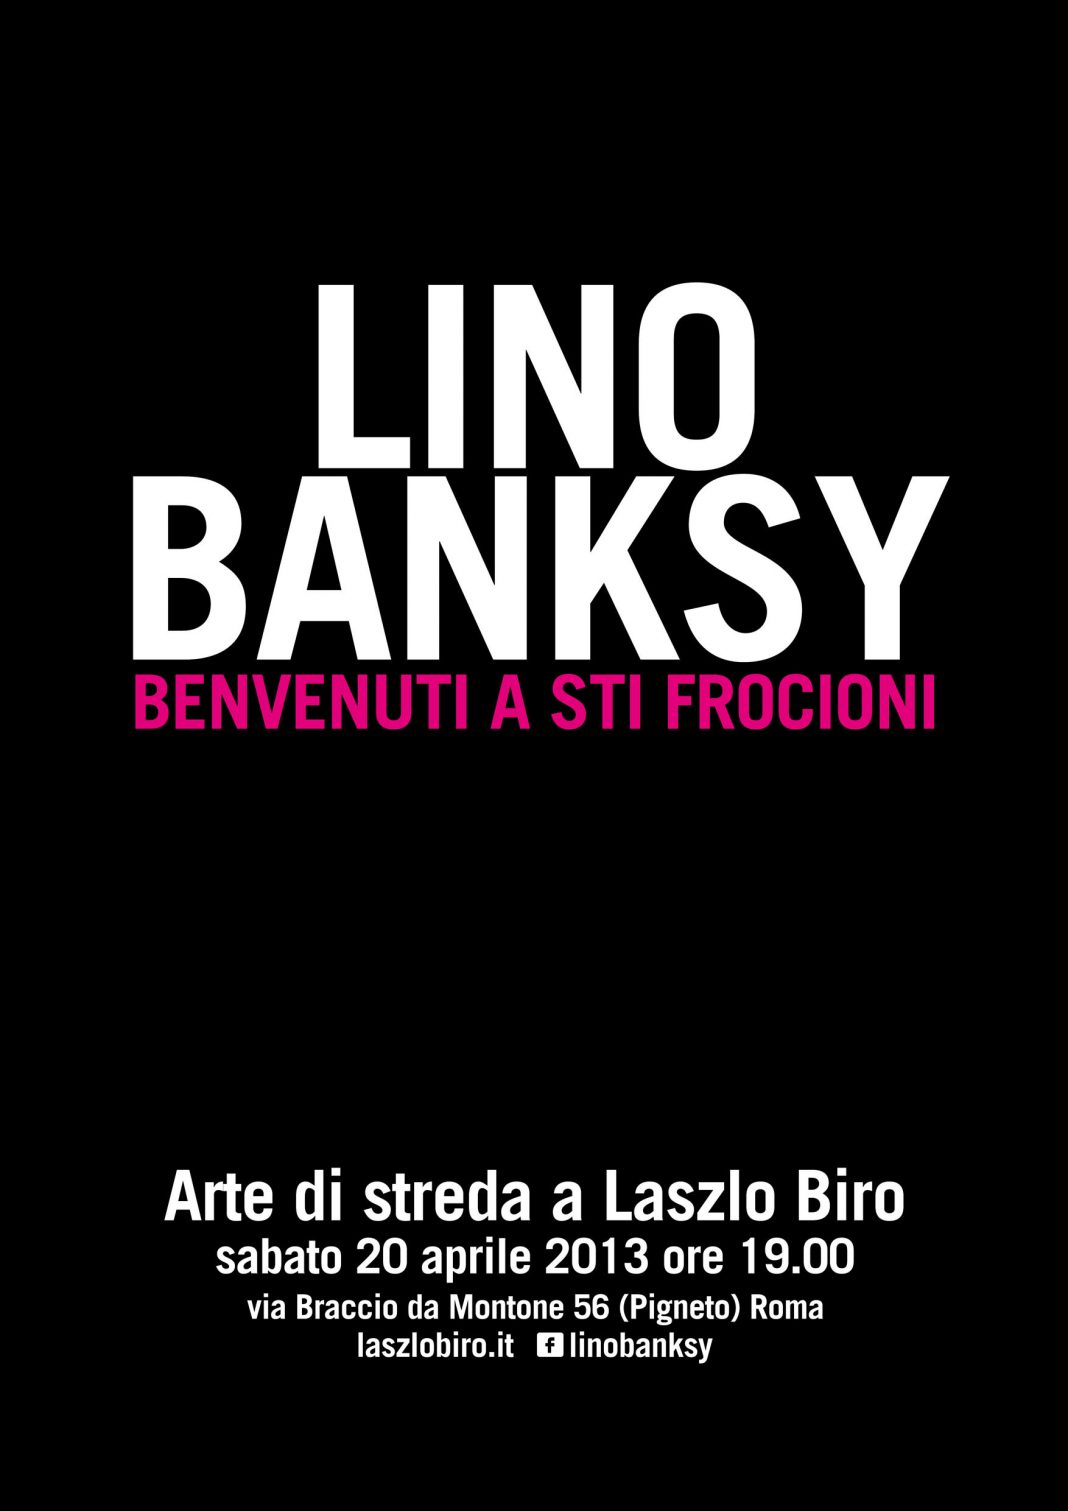 Lino Banksy – Benvenuti a sti frocionihttps://www.exibart.com/repository/media/eventi/2013/04/lino-banksy-8211-benvenuti-a-sti-frocioni-1068x1511.jpg